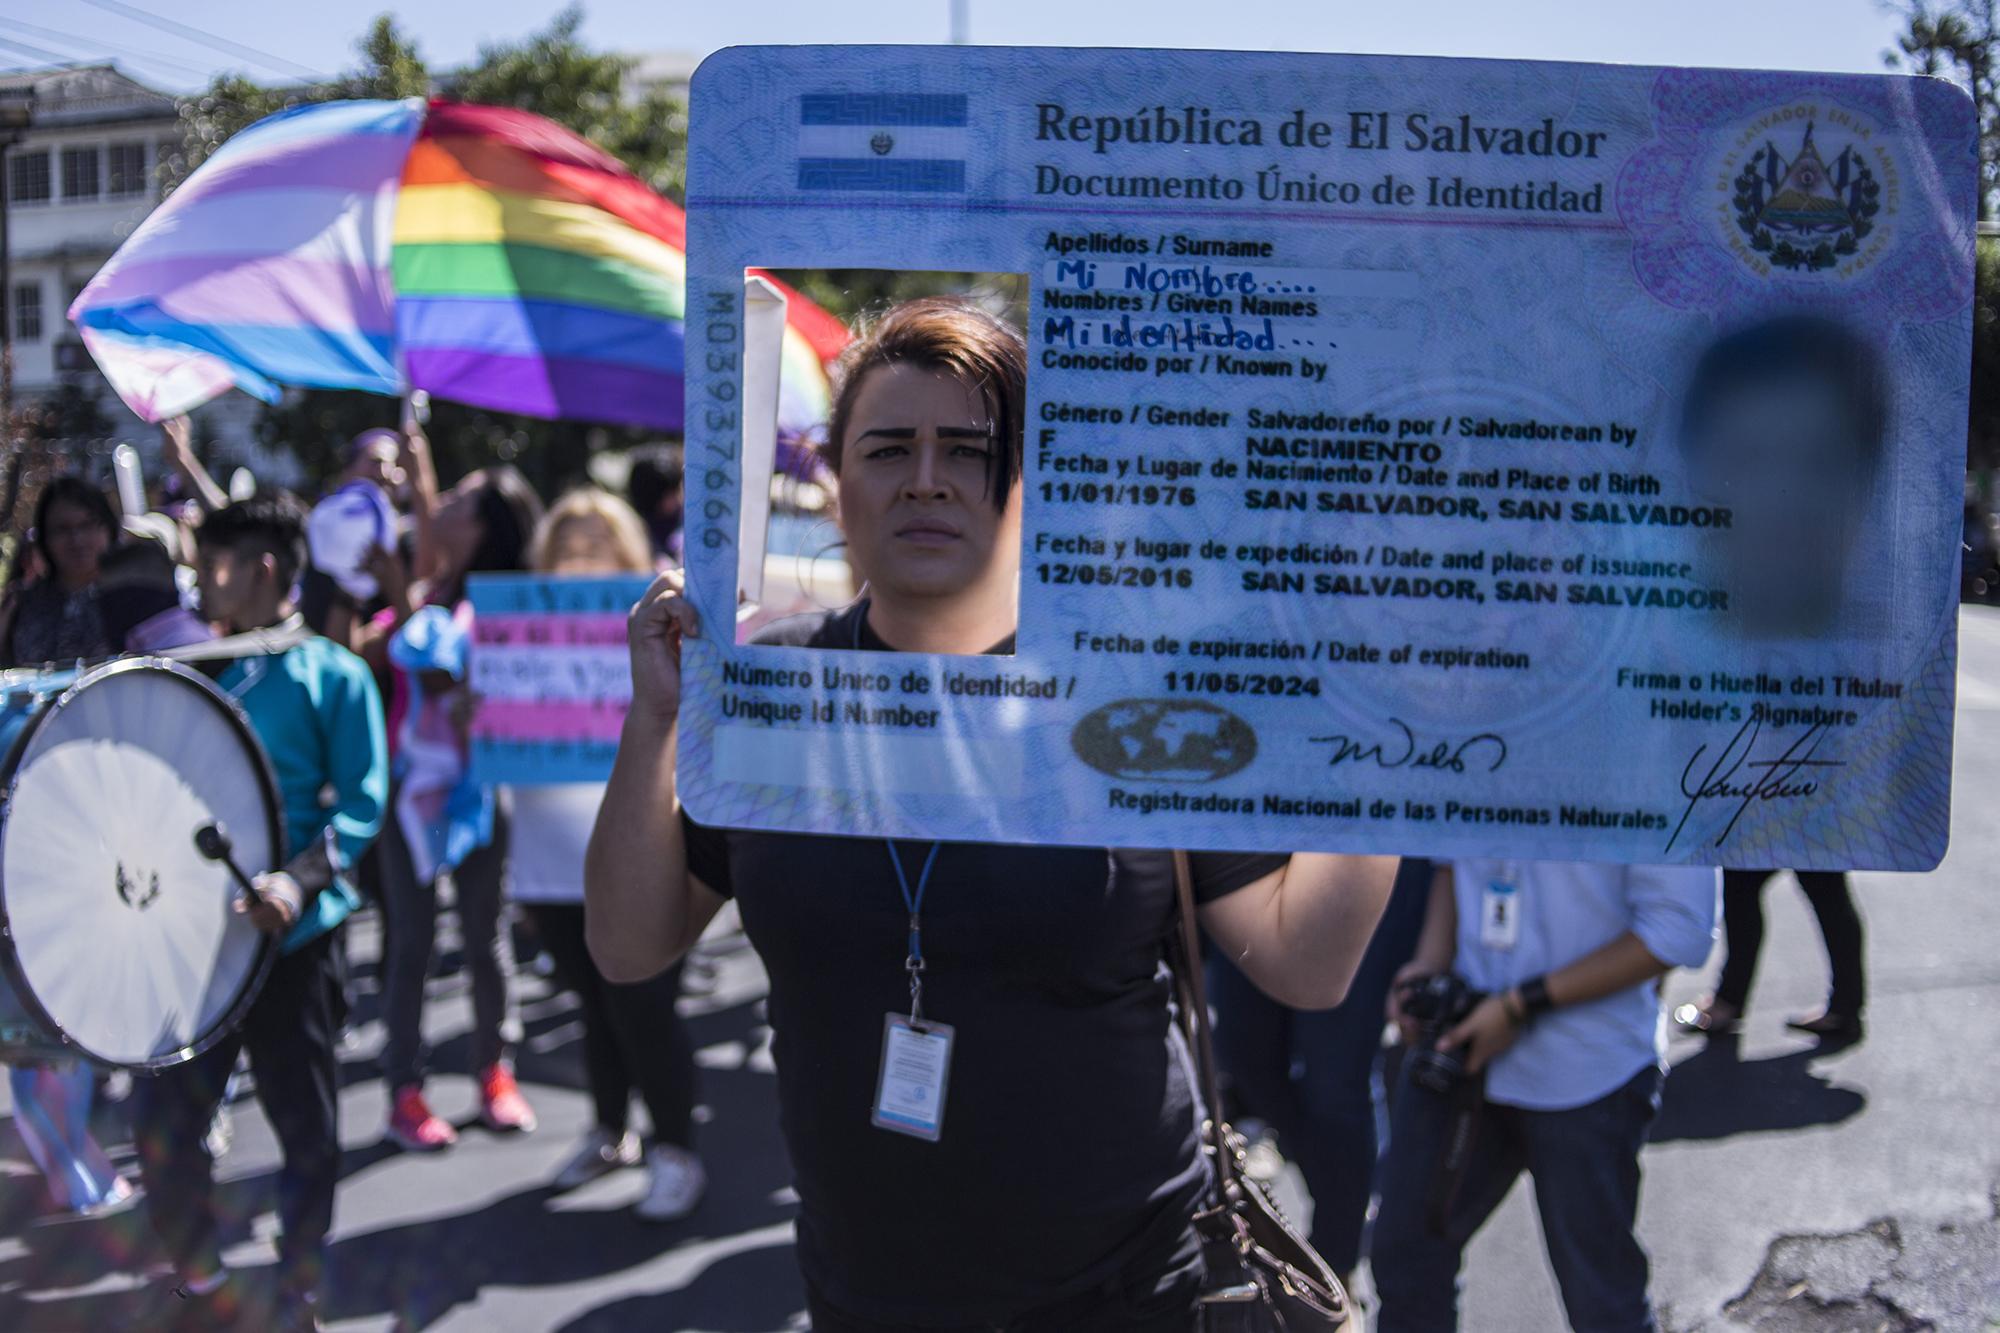 La población trans ha exigido el derecho a su identidad en las calles desde 1997, cuando se realizó la primera Marcha del Orgullo en San Salvador. Foto: Víctor Peña.